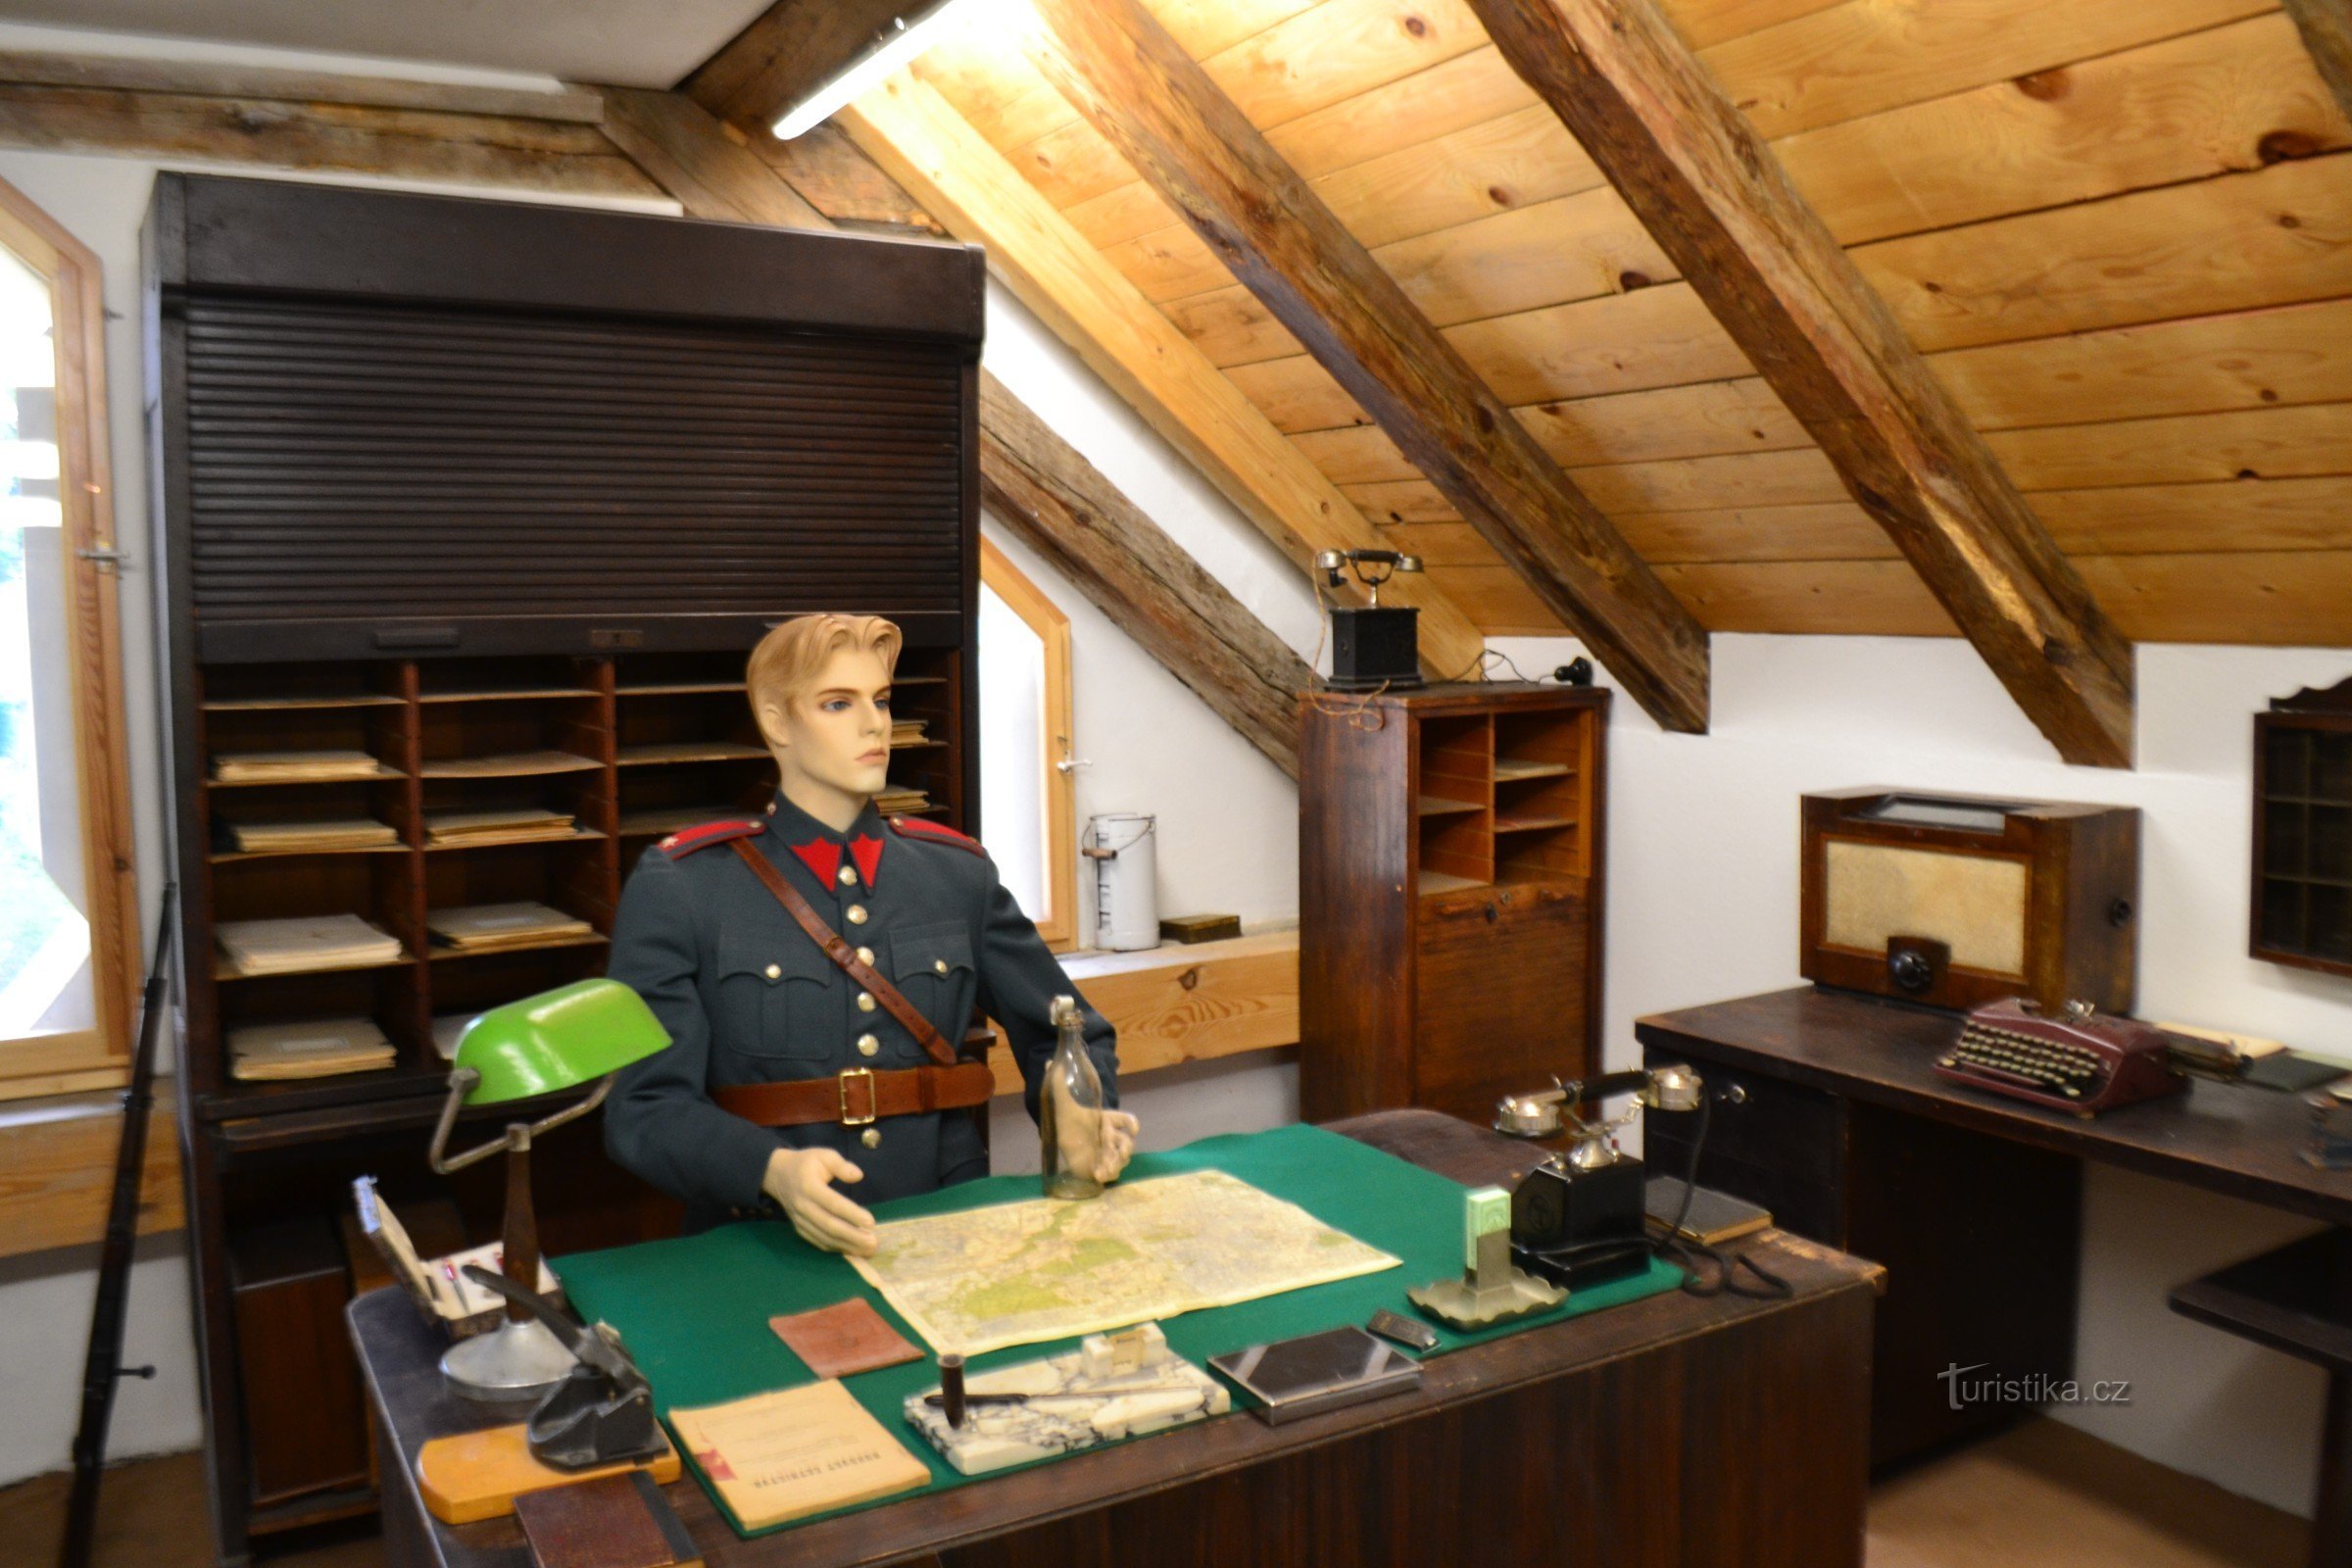 Ősi hűtőszekrény – Milyen volt az élet Tatíček Masaryk idejében – az új múzeum visszavisz d